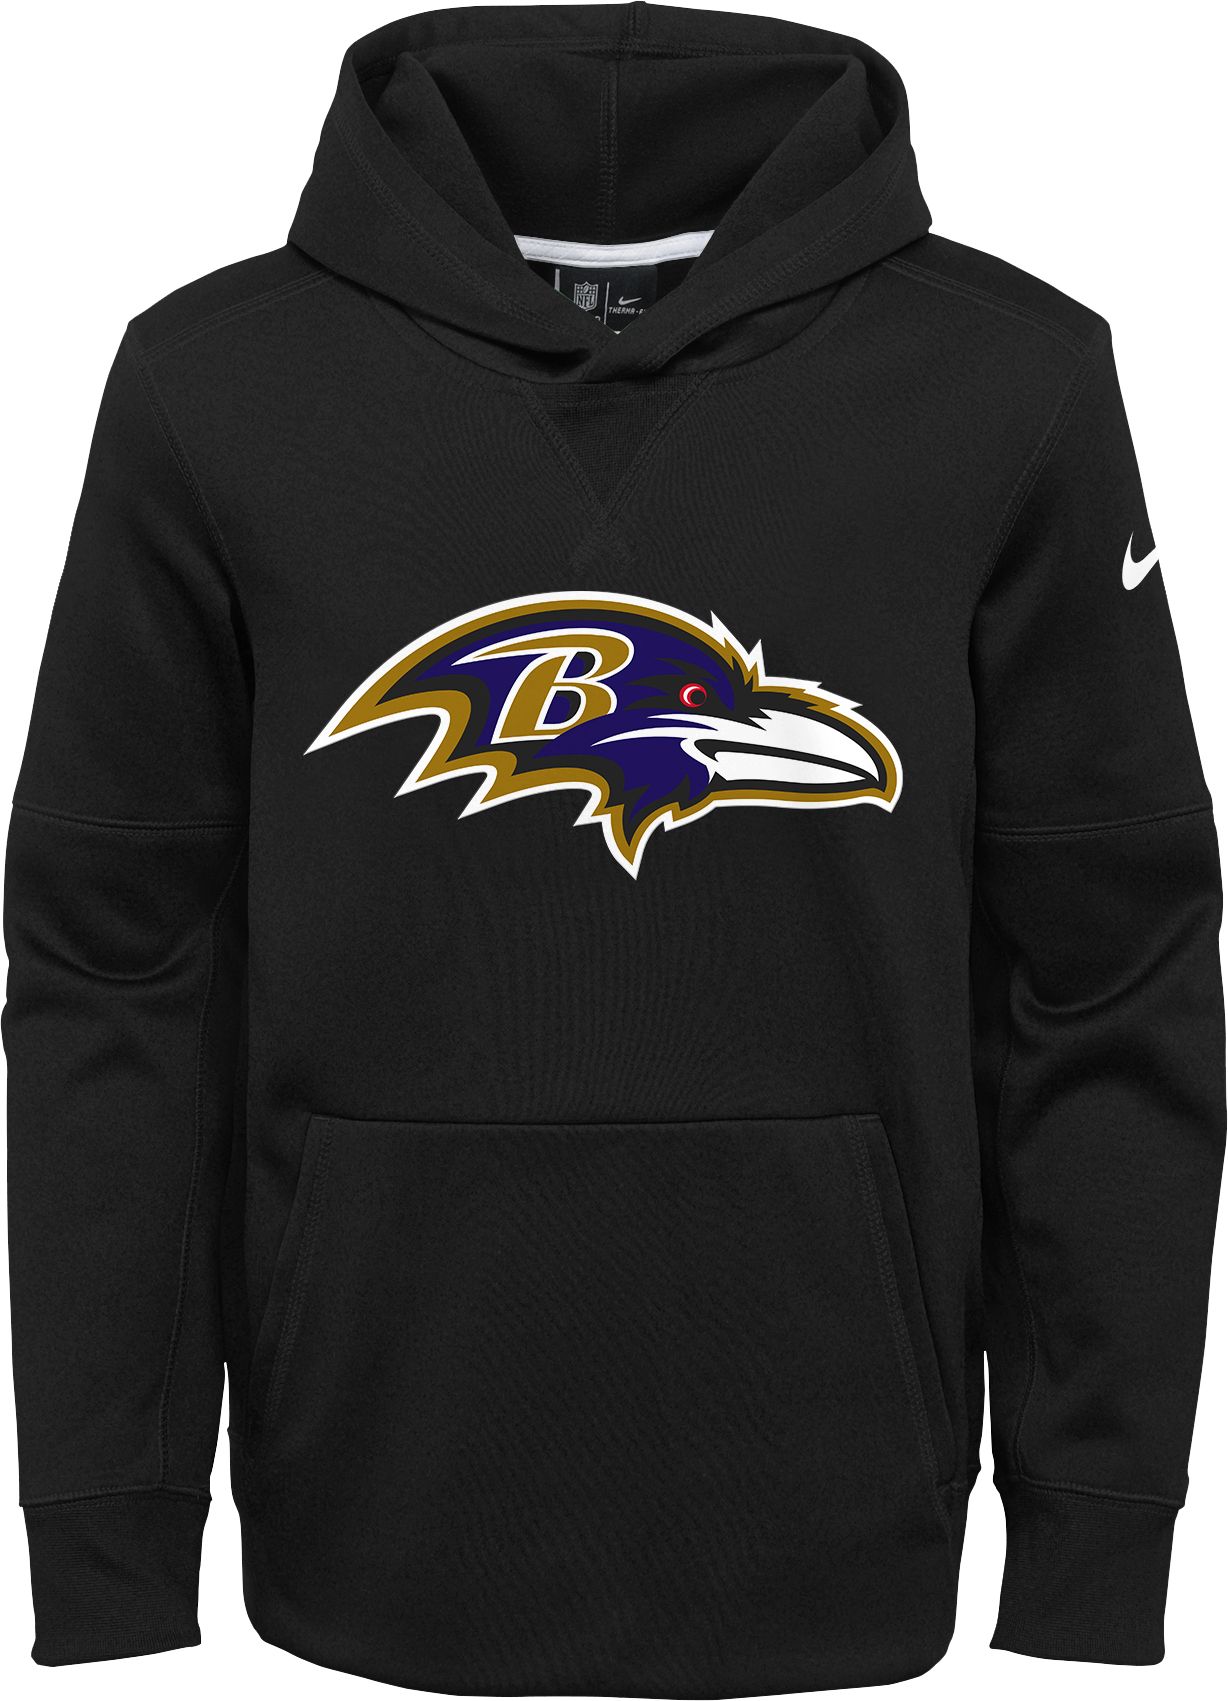 Nike Youth Baltimore Ravens Logo 